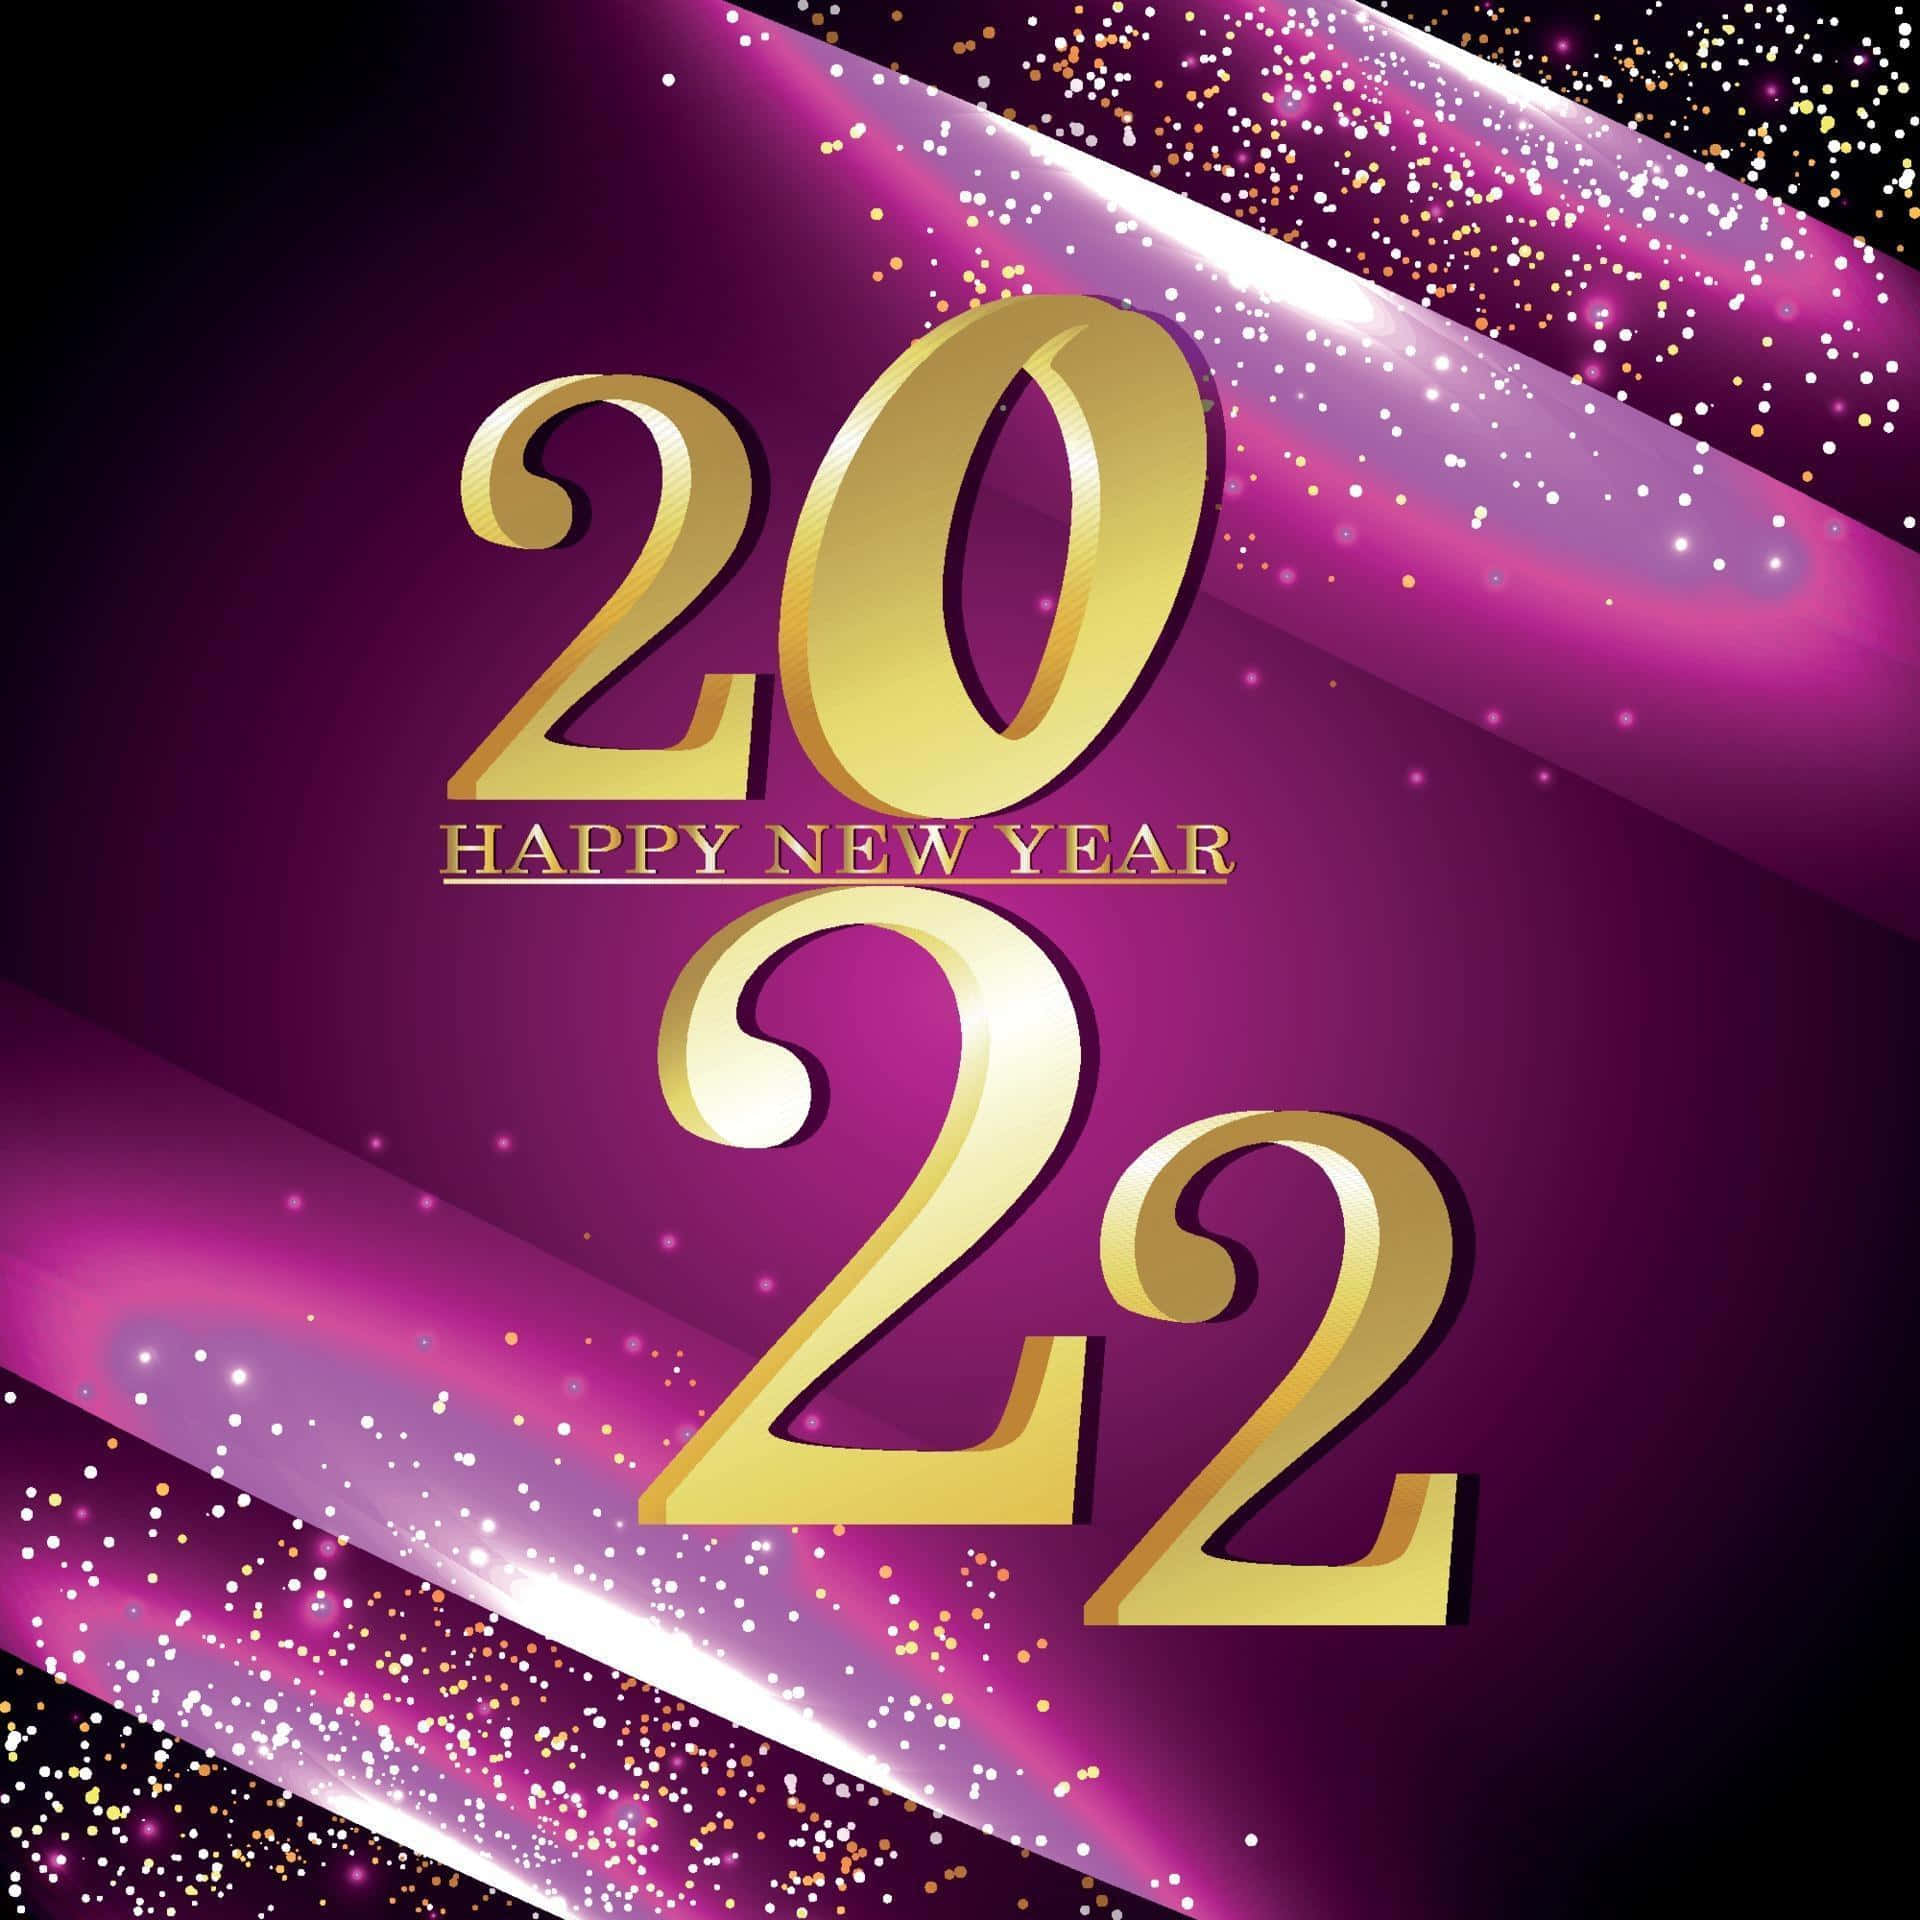 Ichwünsche Dir Ein Frohes Und Gesegnetes Neues Jahr 2022!